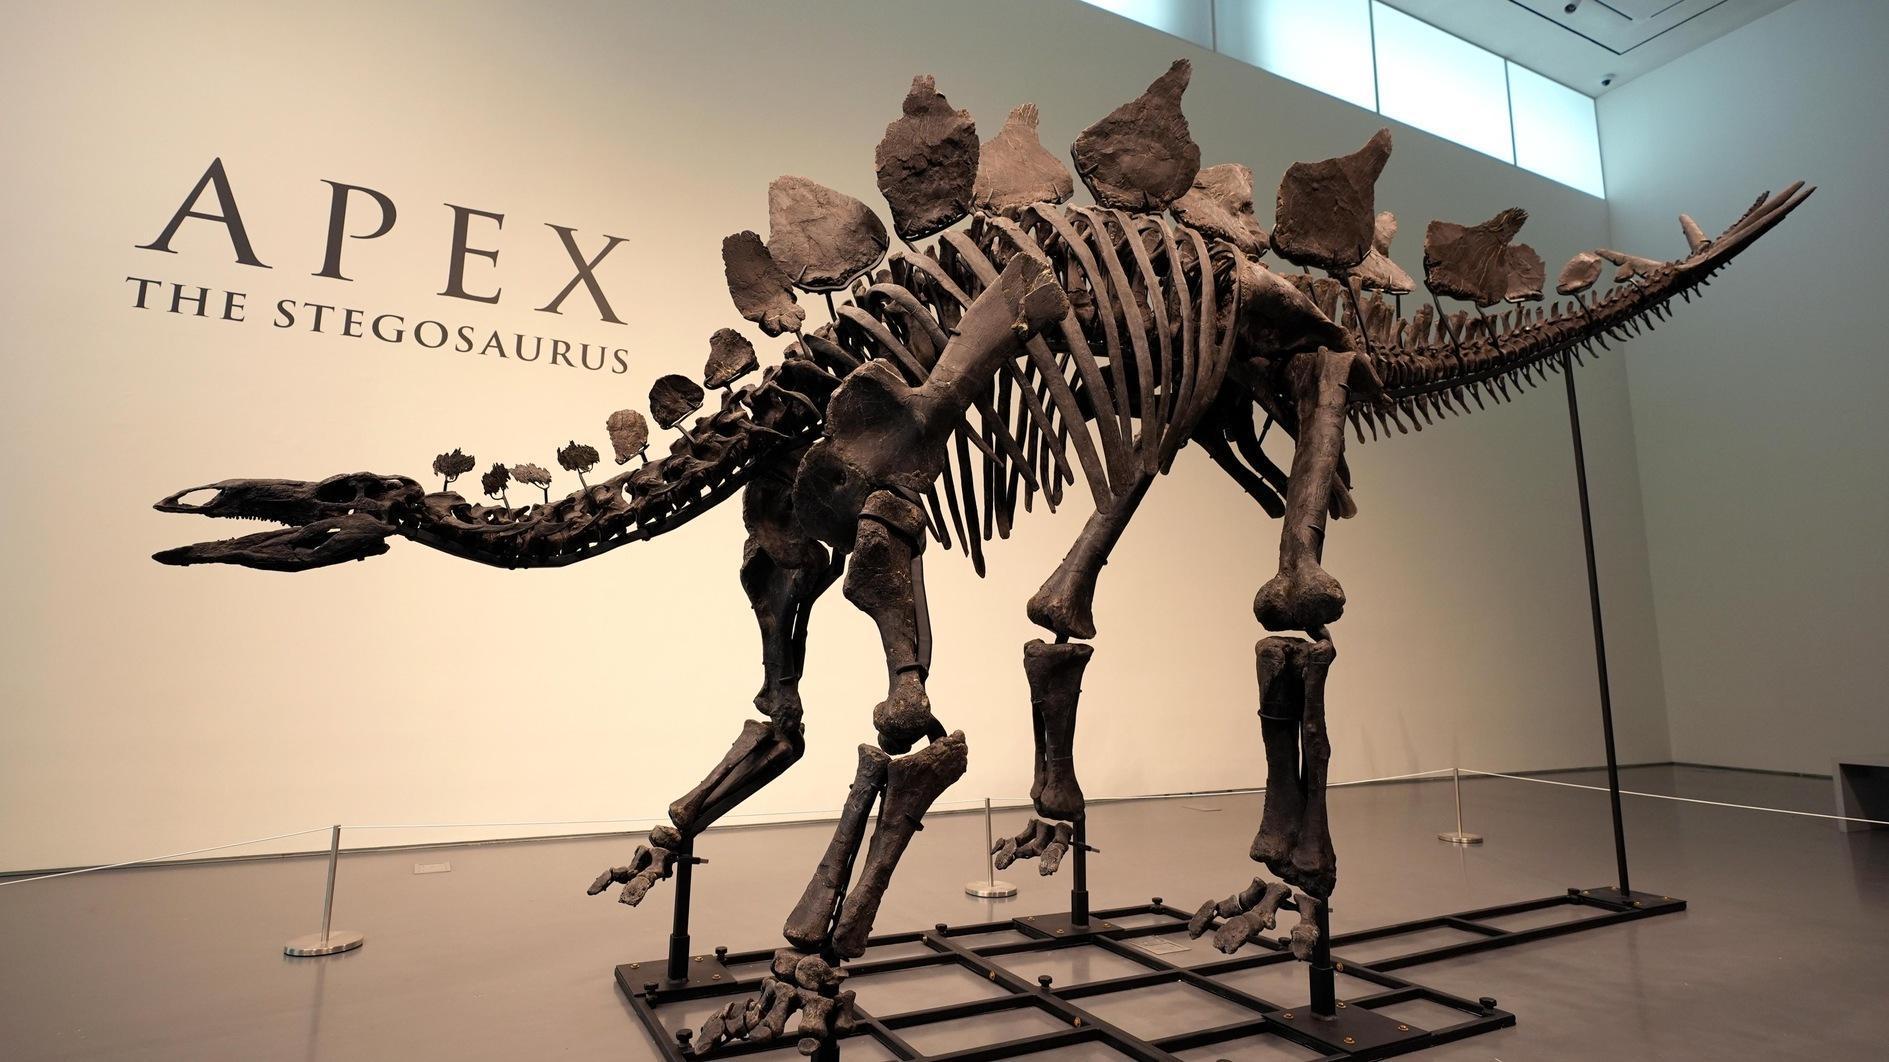 Stegosaurus-skelet brengt miljoenen op bij veiling in New York